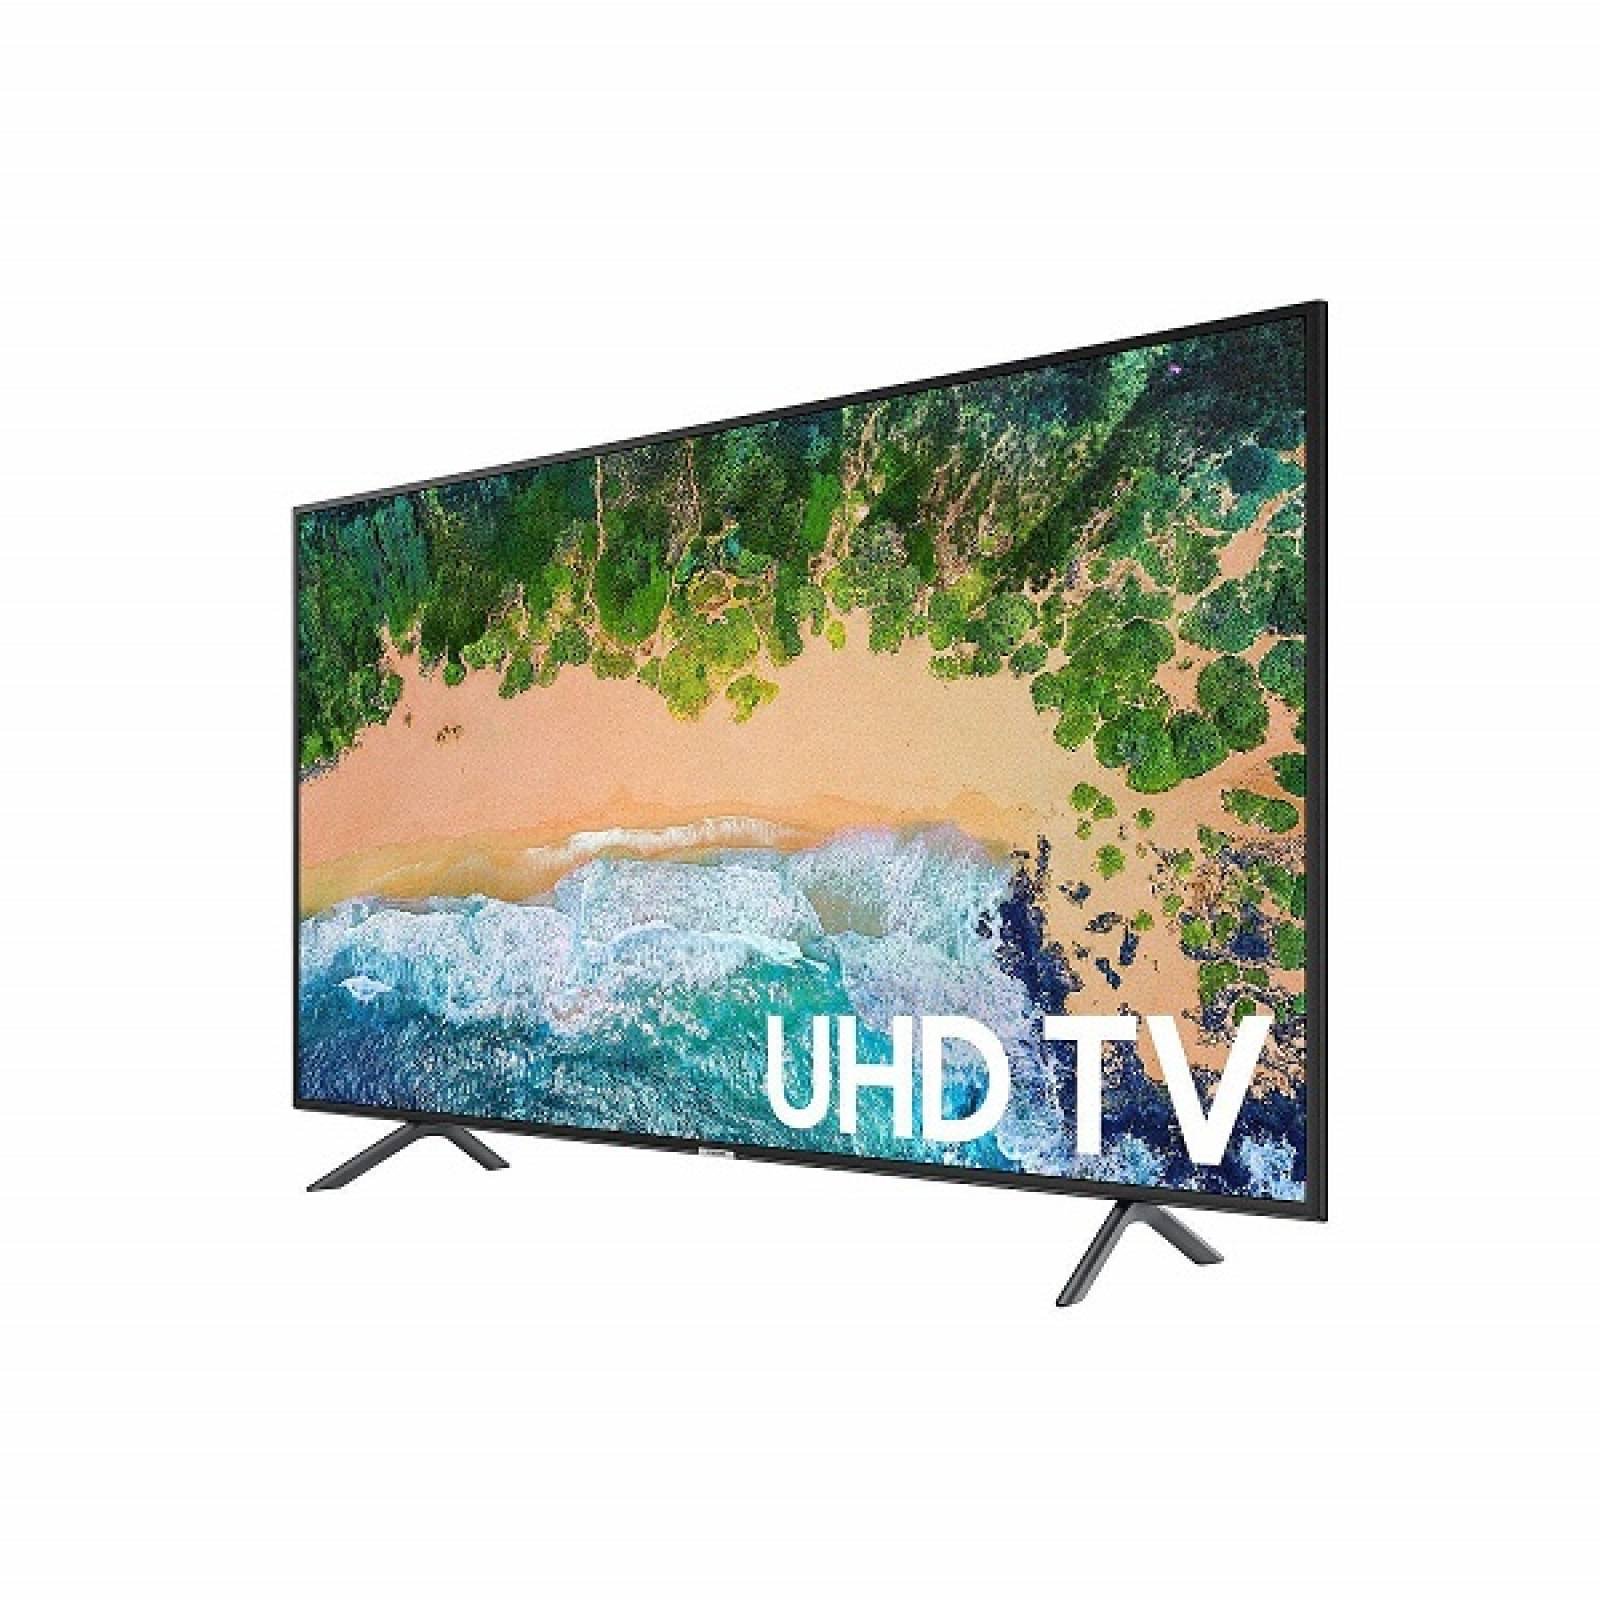 Smart TV 50 Samsung LED 4K UHD HDR USB HDMI UN50NU710DFXZA - Reacondicionado